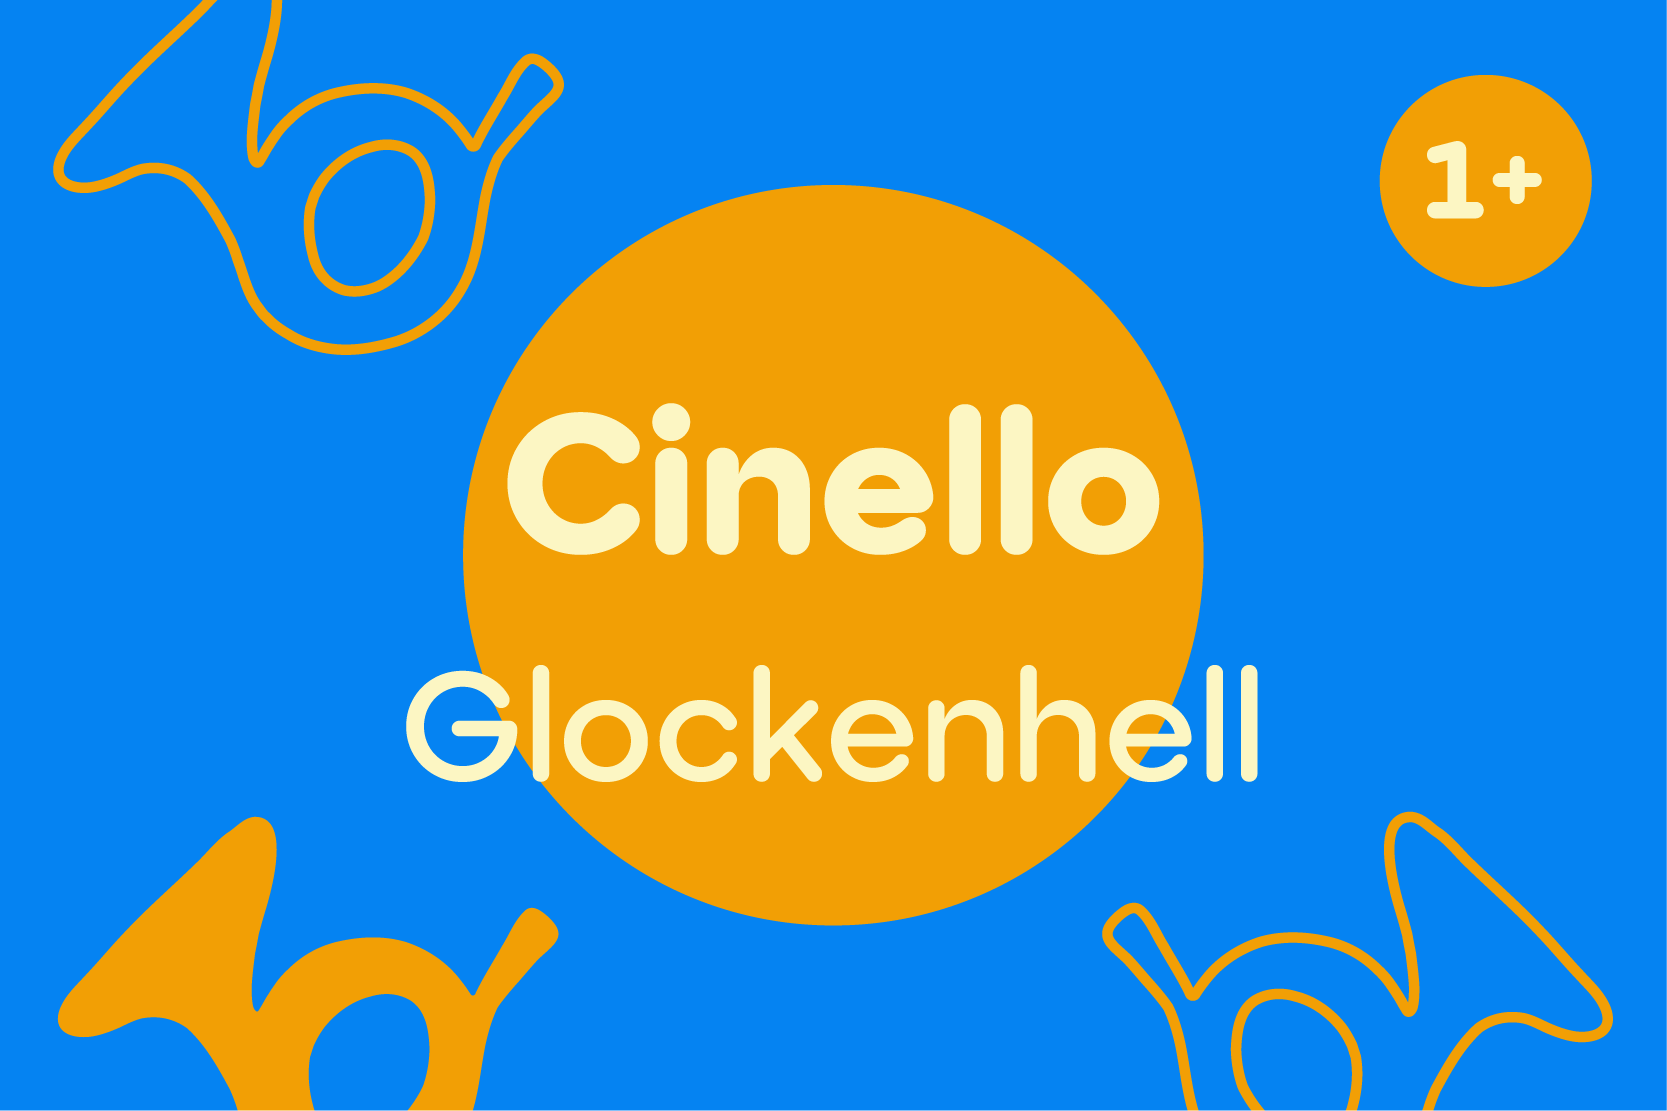 Cinello - Glockenhell